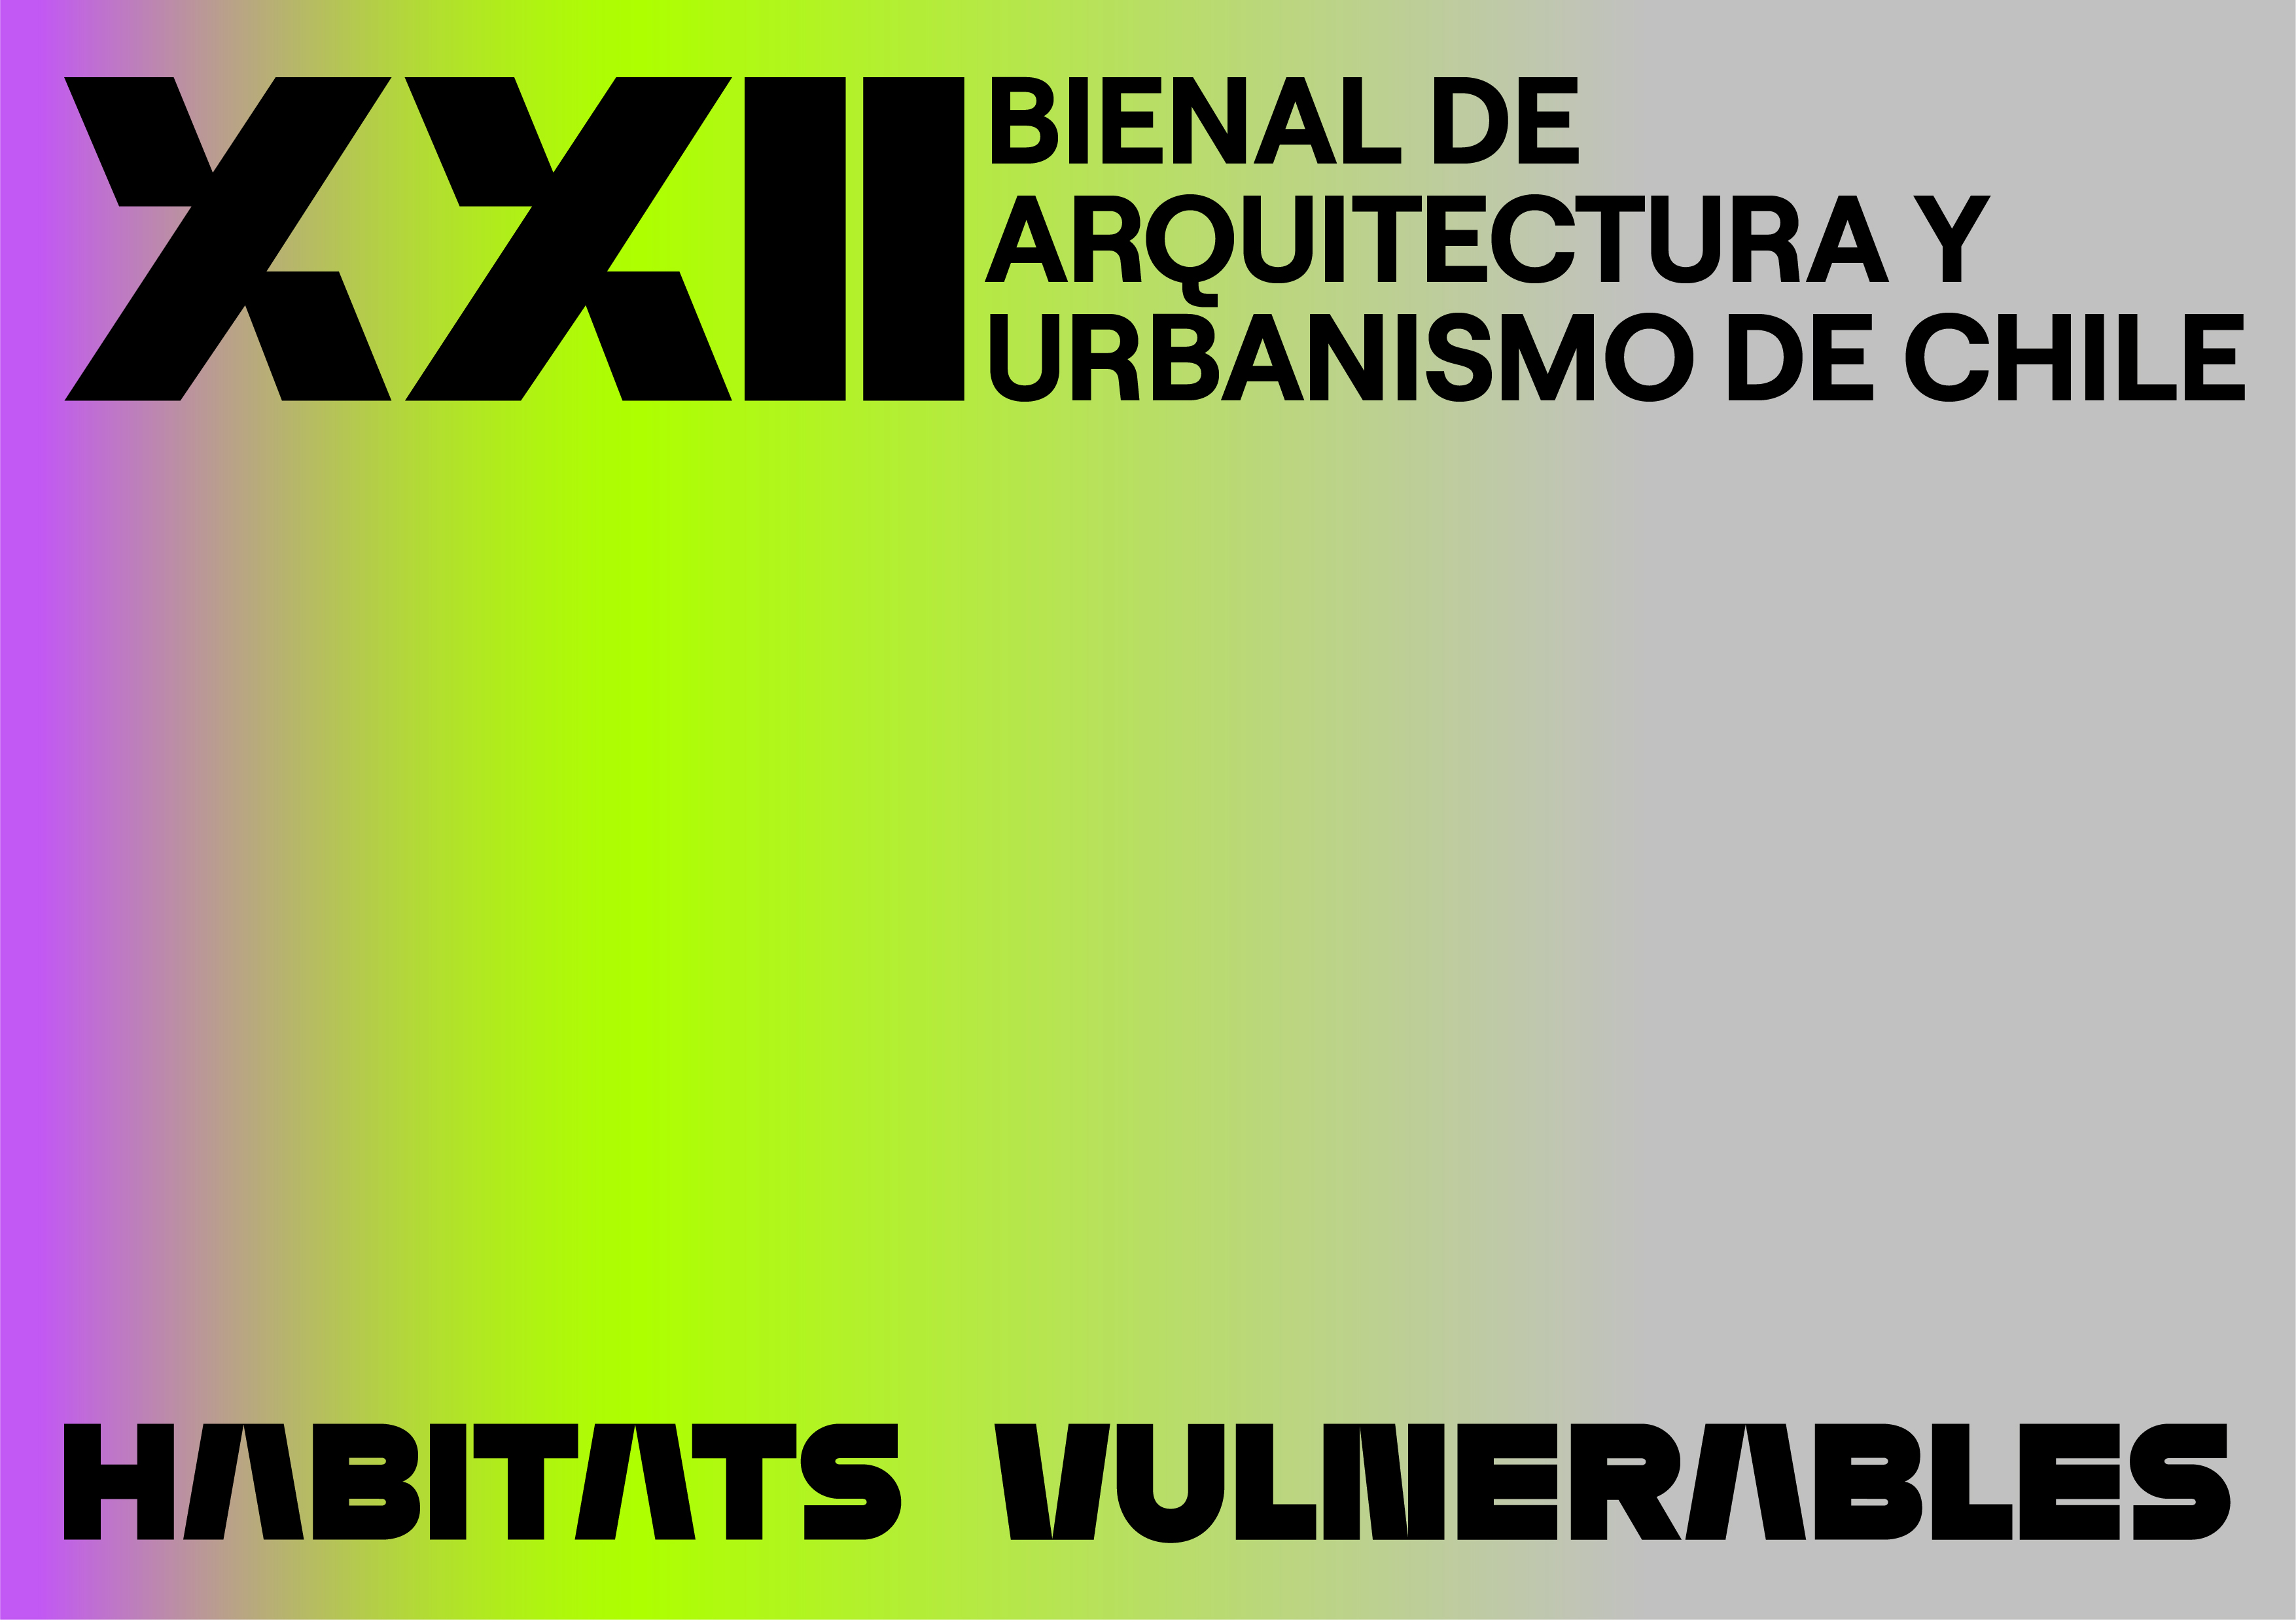 Bienal de Arquitectura y Urbanismo de Chile